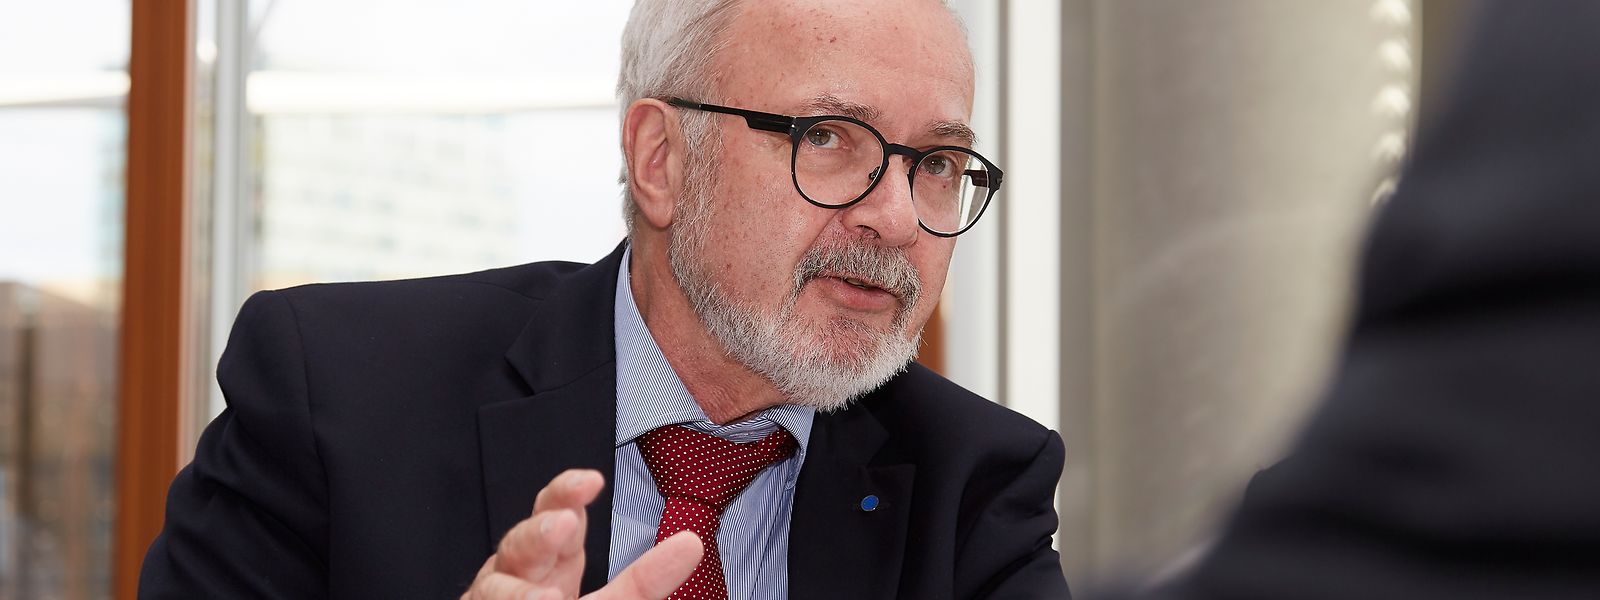 Werner Hoyer ist seit Januar 2012 Präsident der Europäischen Investitionsbank.